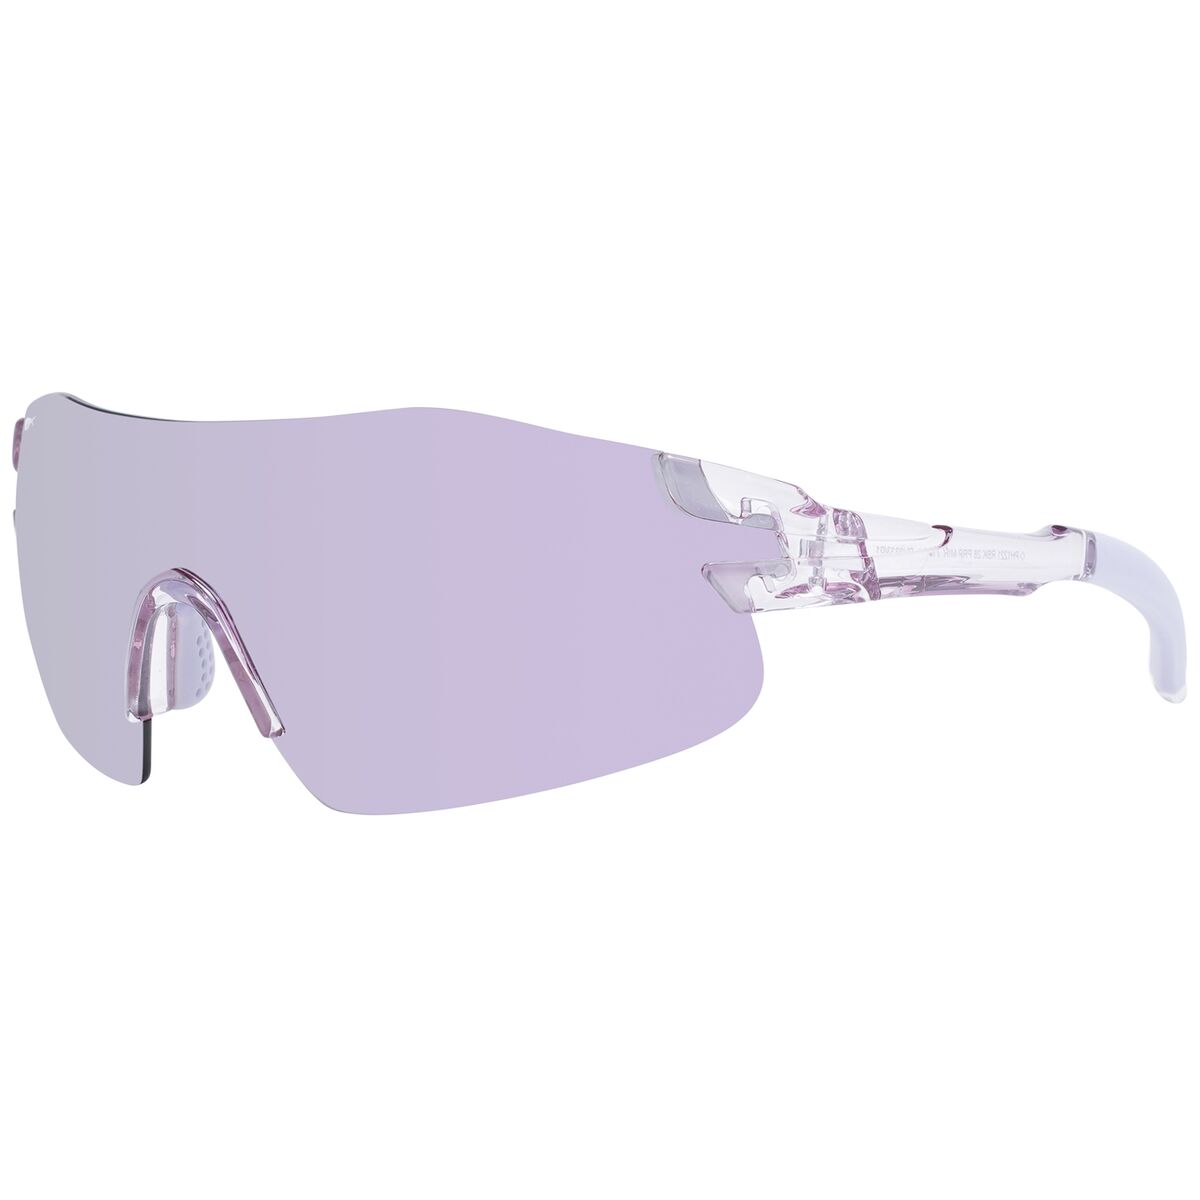 Ladies' Sunglasses Reebok RV9333 13001